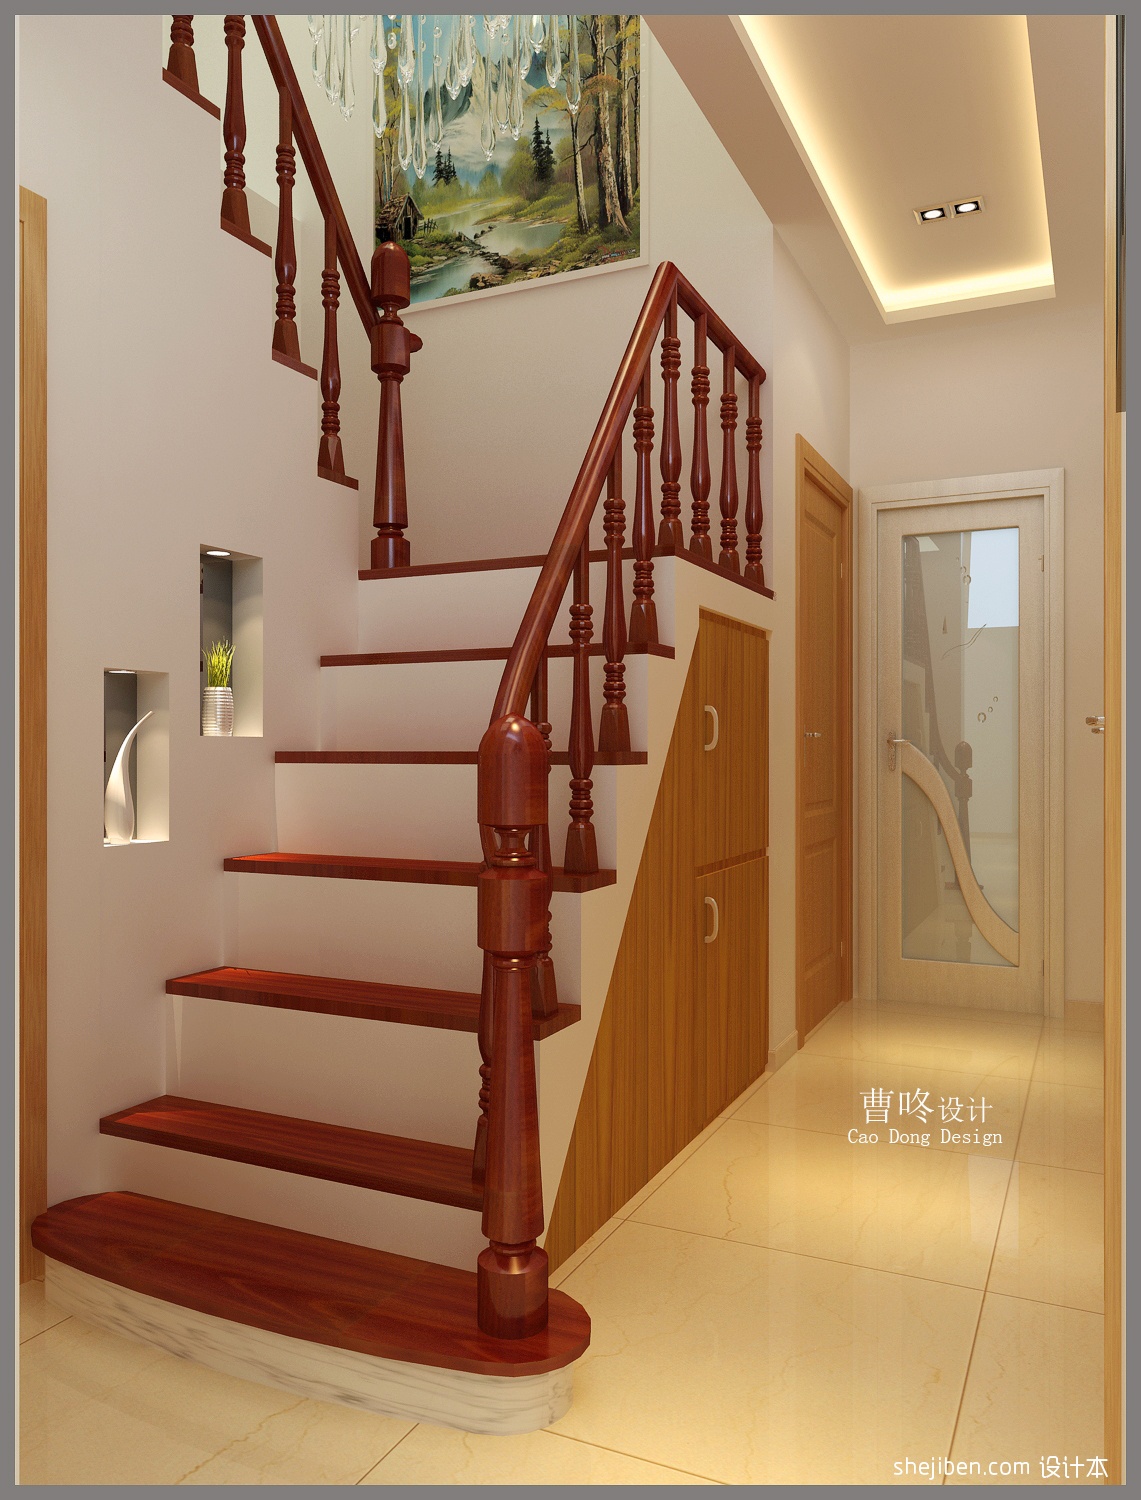 中式简约装修风格室内楼梯扶手图片大全_别墅设计图